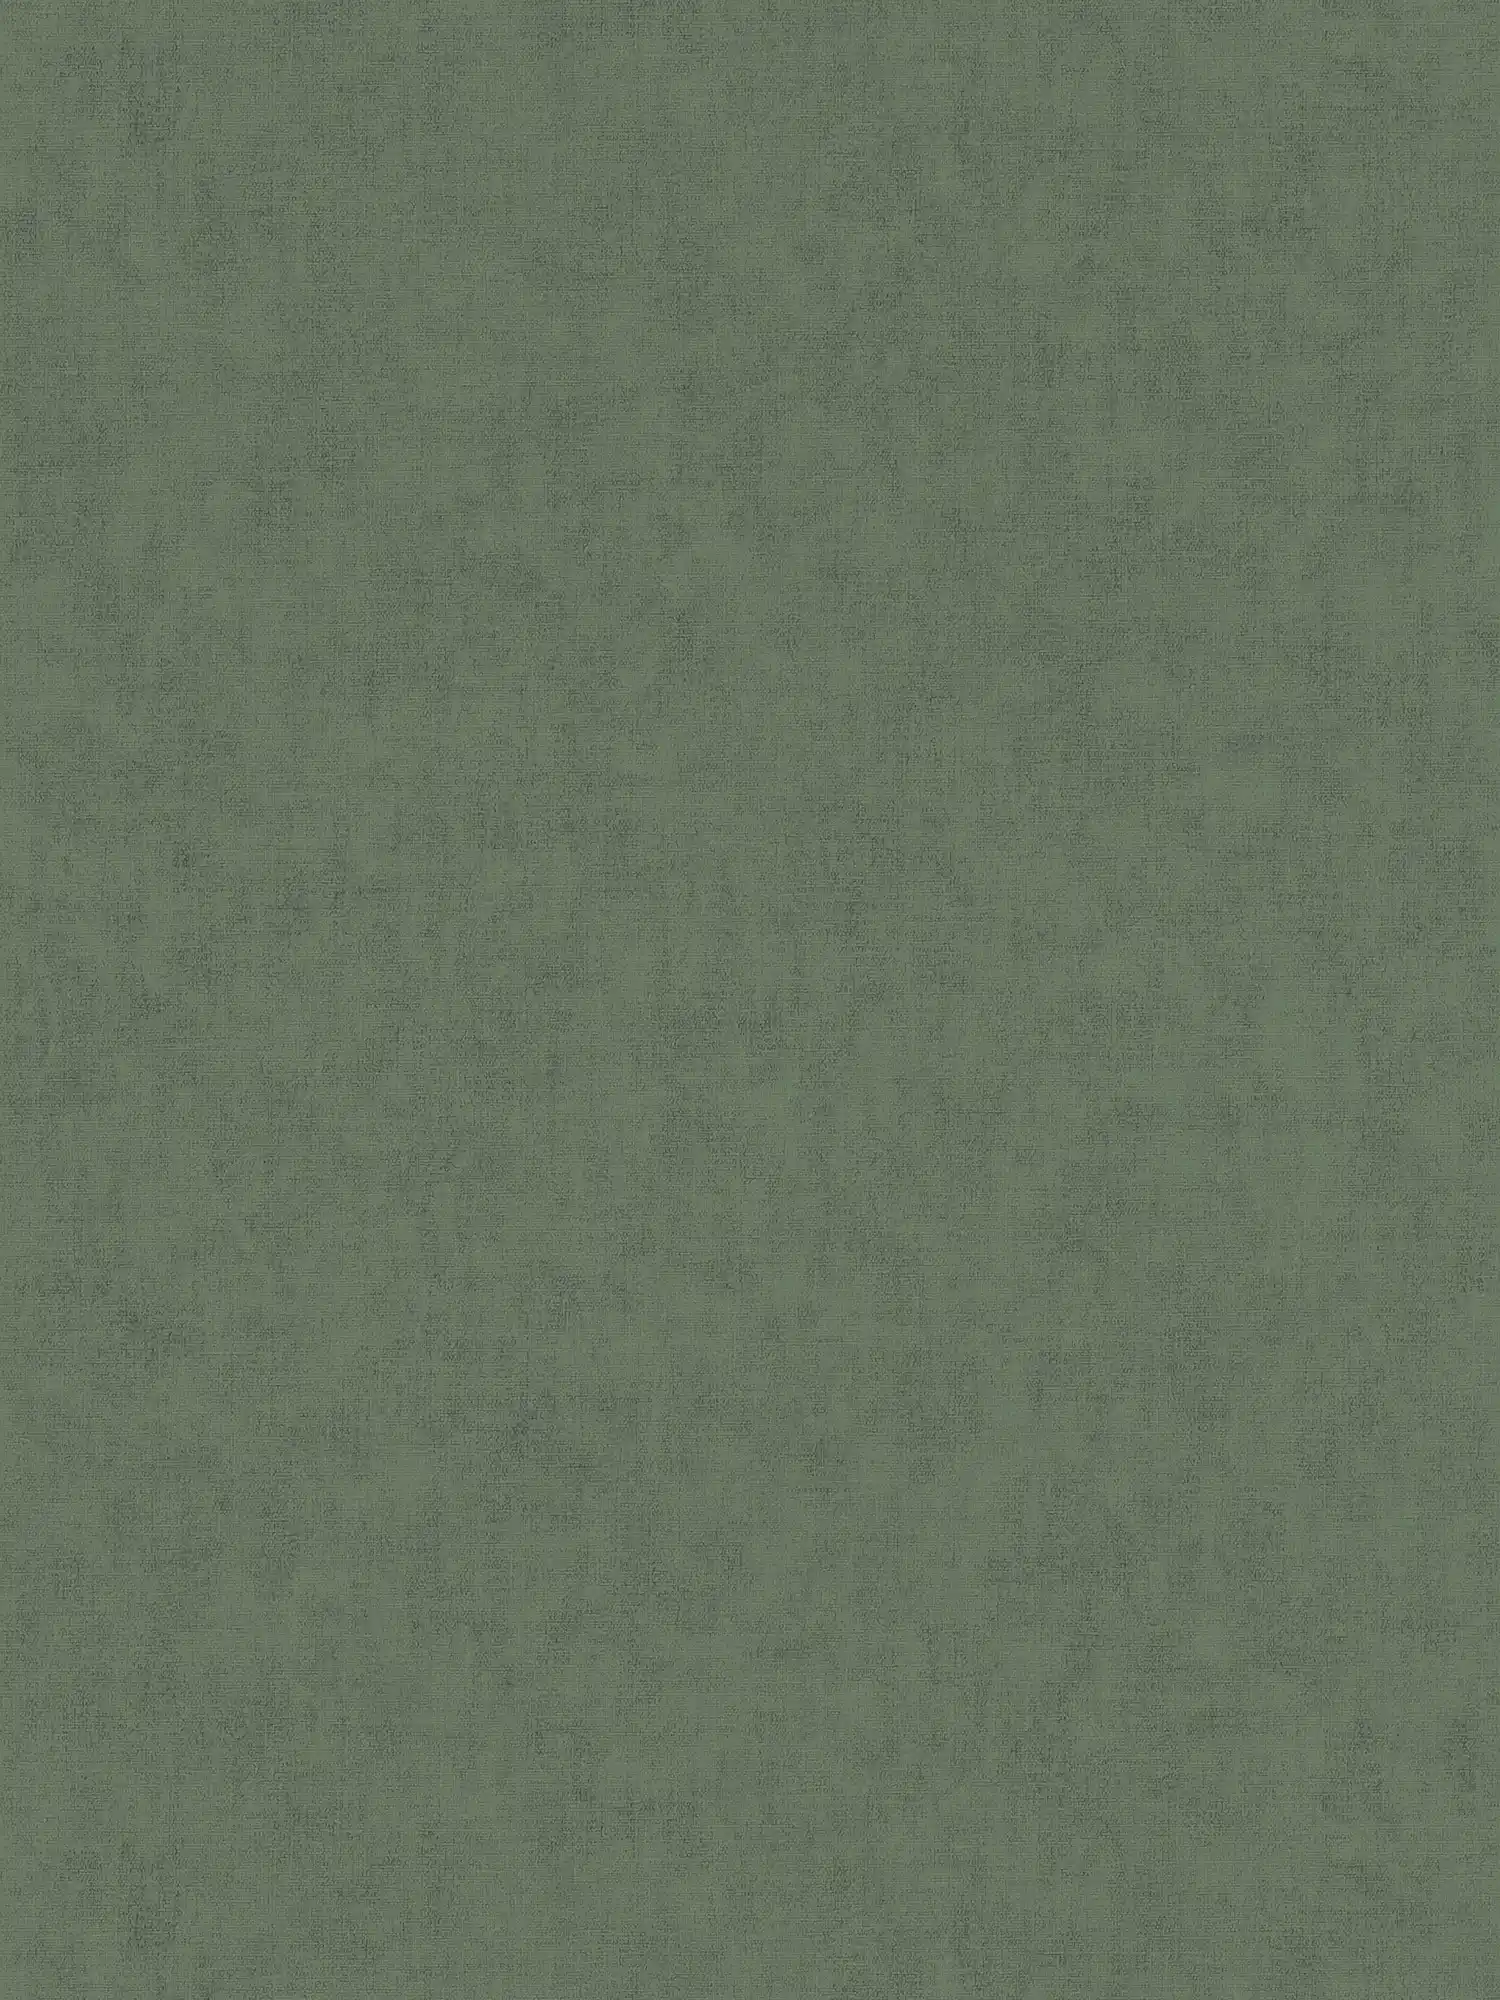 Vliesbehang textiel-look in Scandinavische stijl - grijs, bruin
